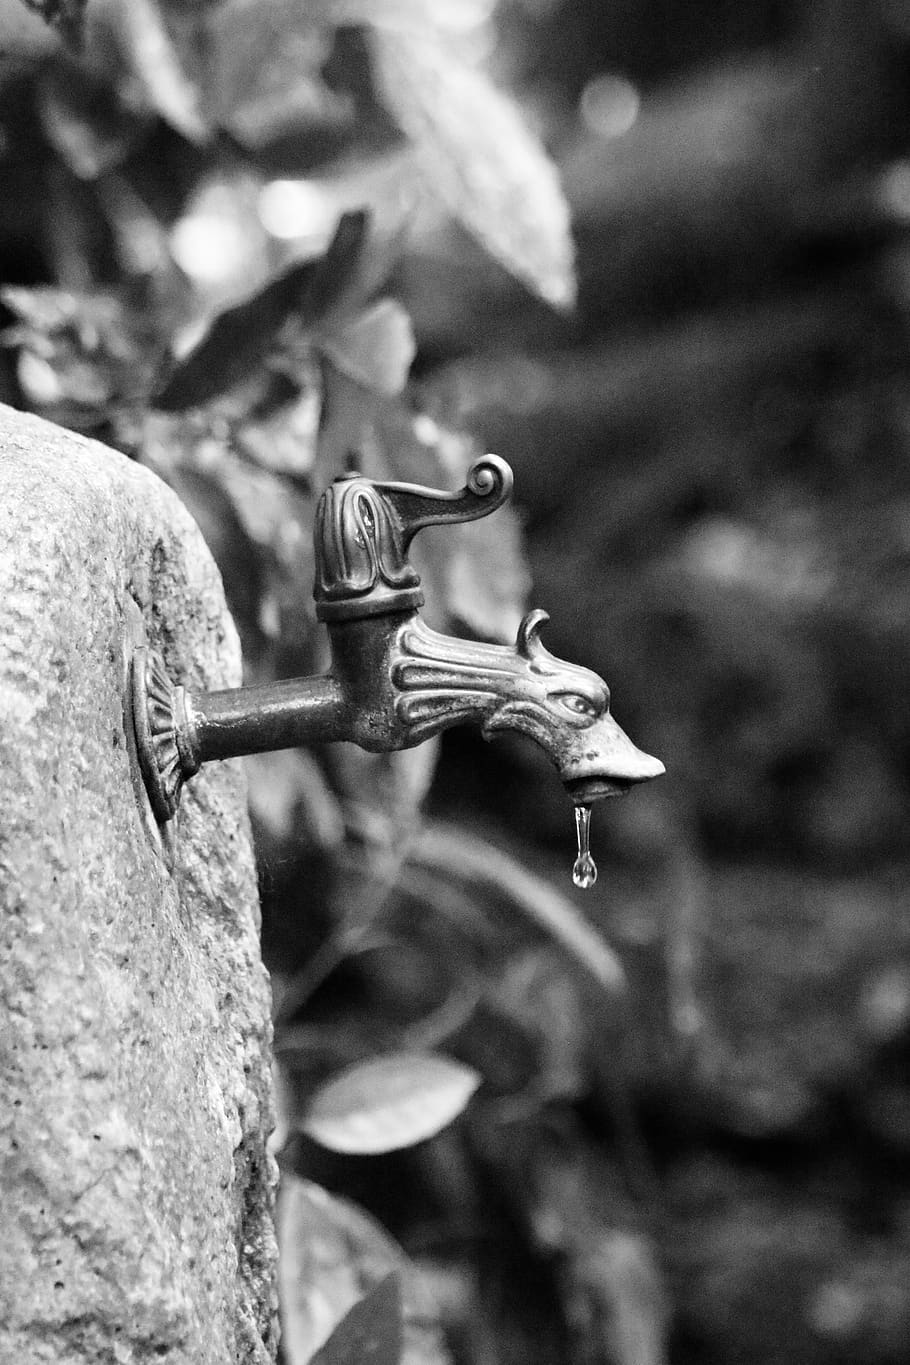 faucet, tua, air sumur, menetes, air, keran, logam, drop, berkarat, katup